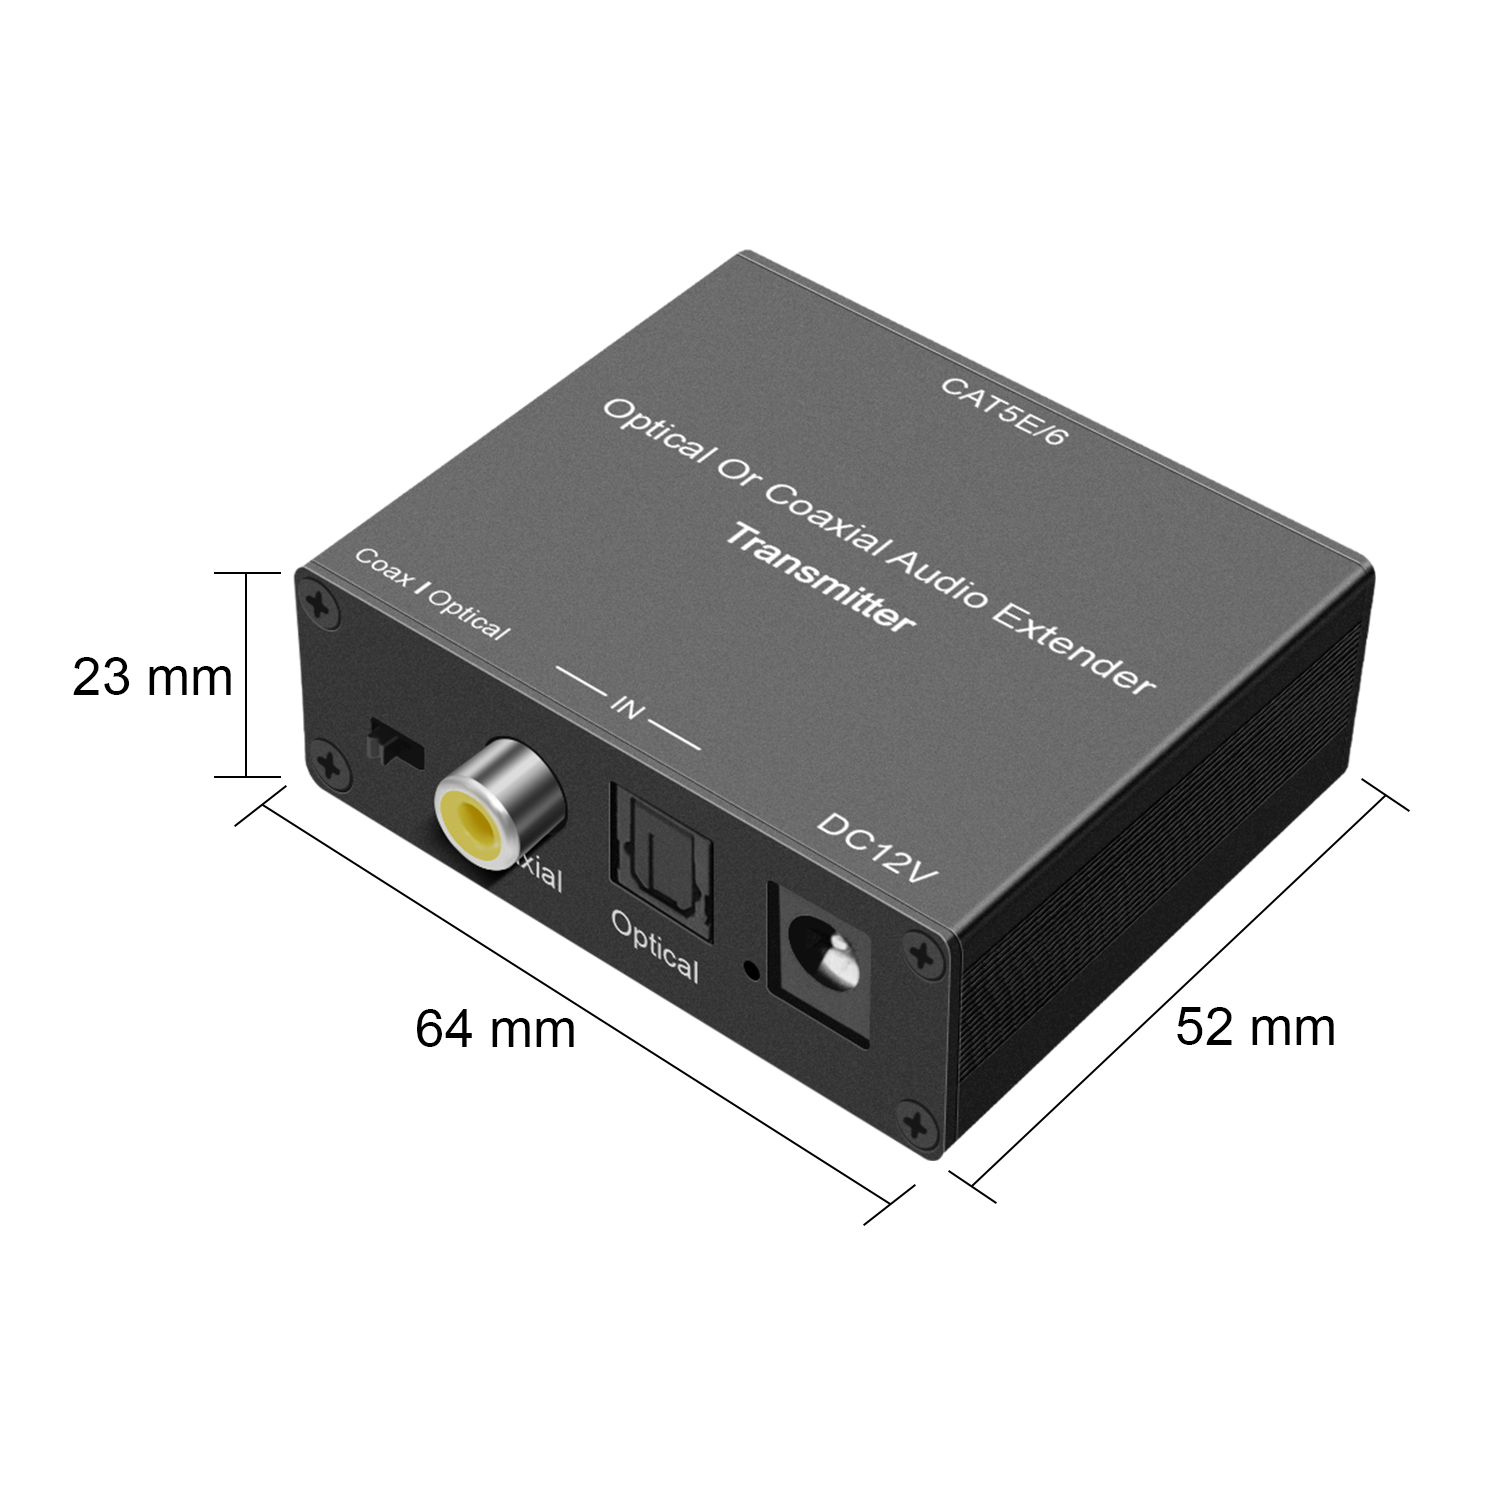 GV-ADTR01 Optical or Coaxial Audio Extender